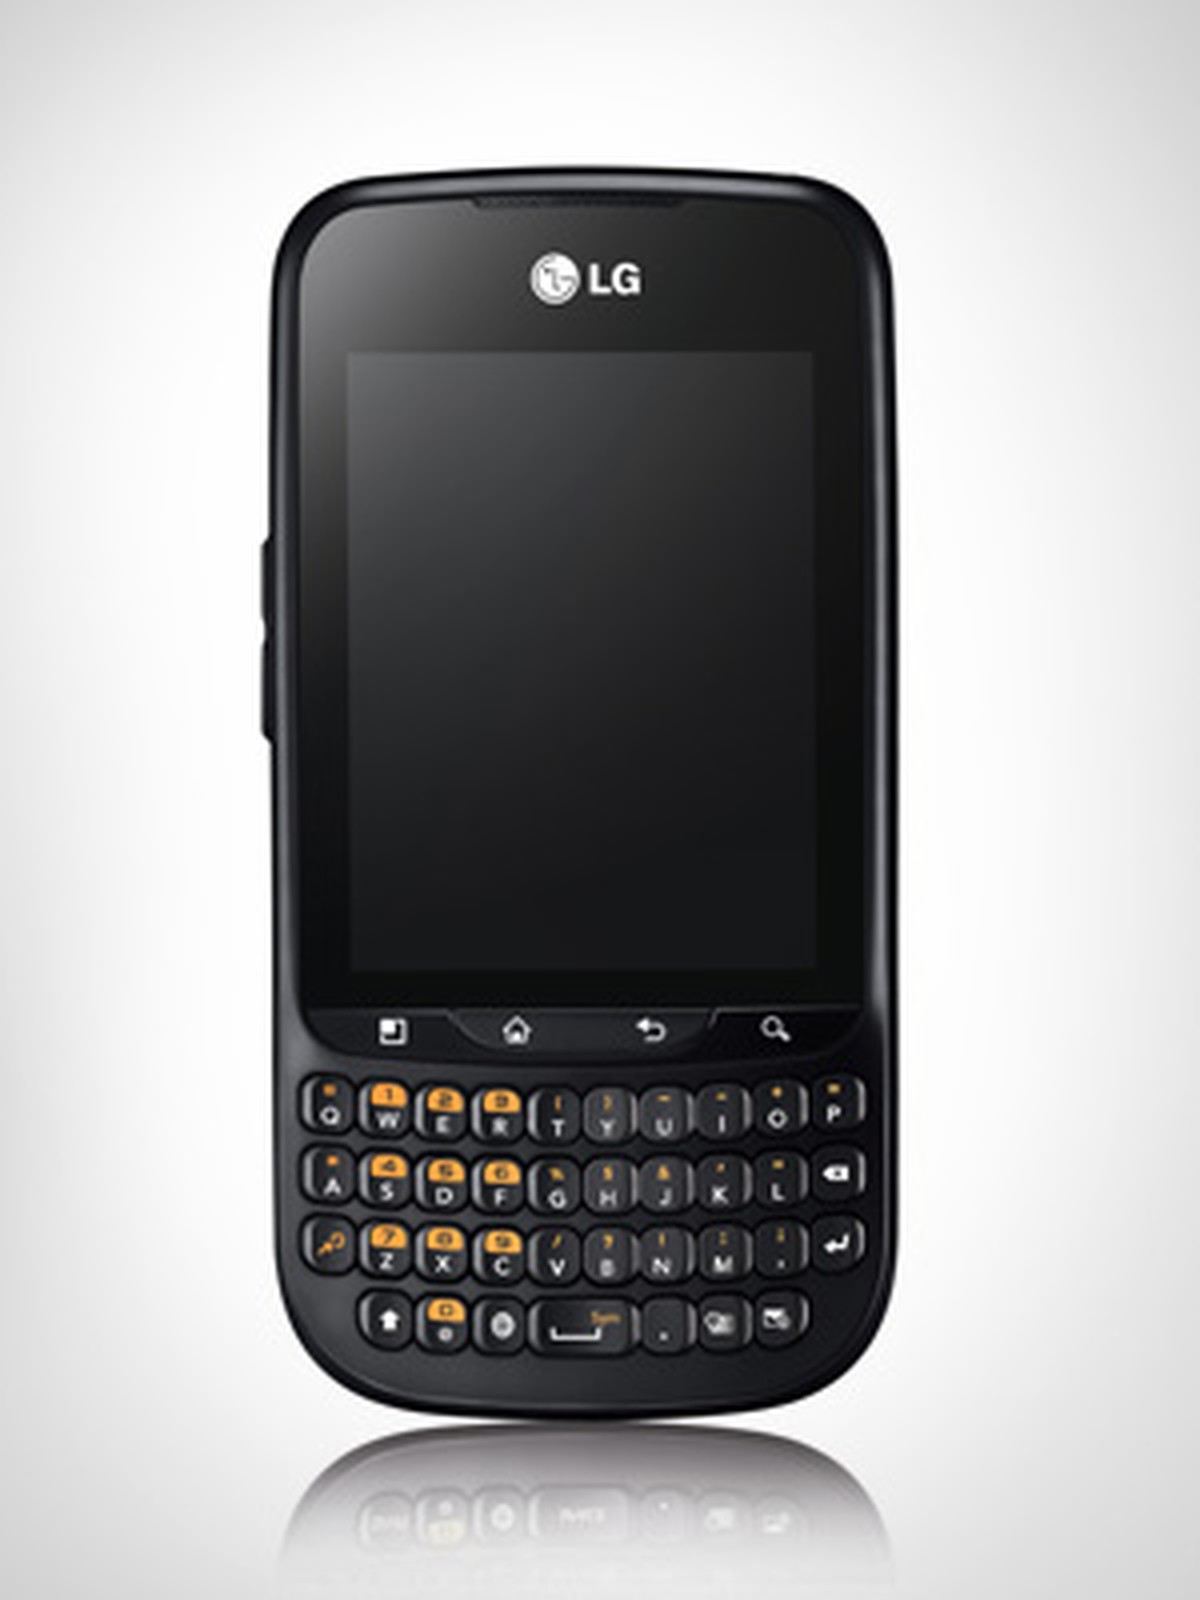 Кнопочный без андроид. Смартфон LG Optimus Pro c660. LG С кверти клавиатурой. Кнопочный смартфон на андроиде. Смартфон с кнопочной клавиатурой и сенсорным.